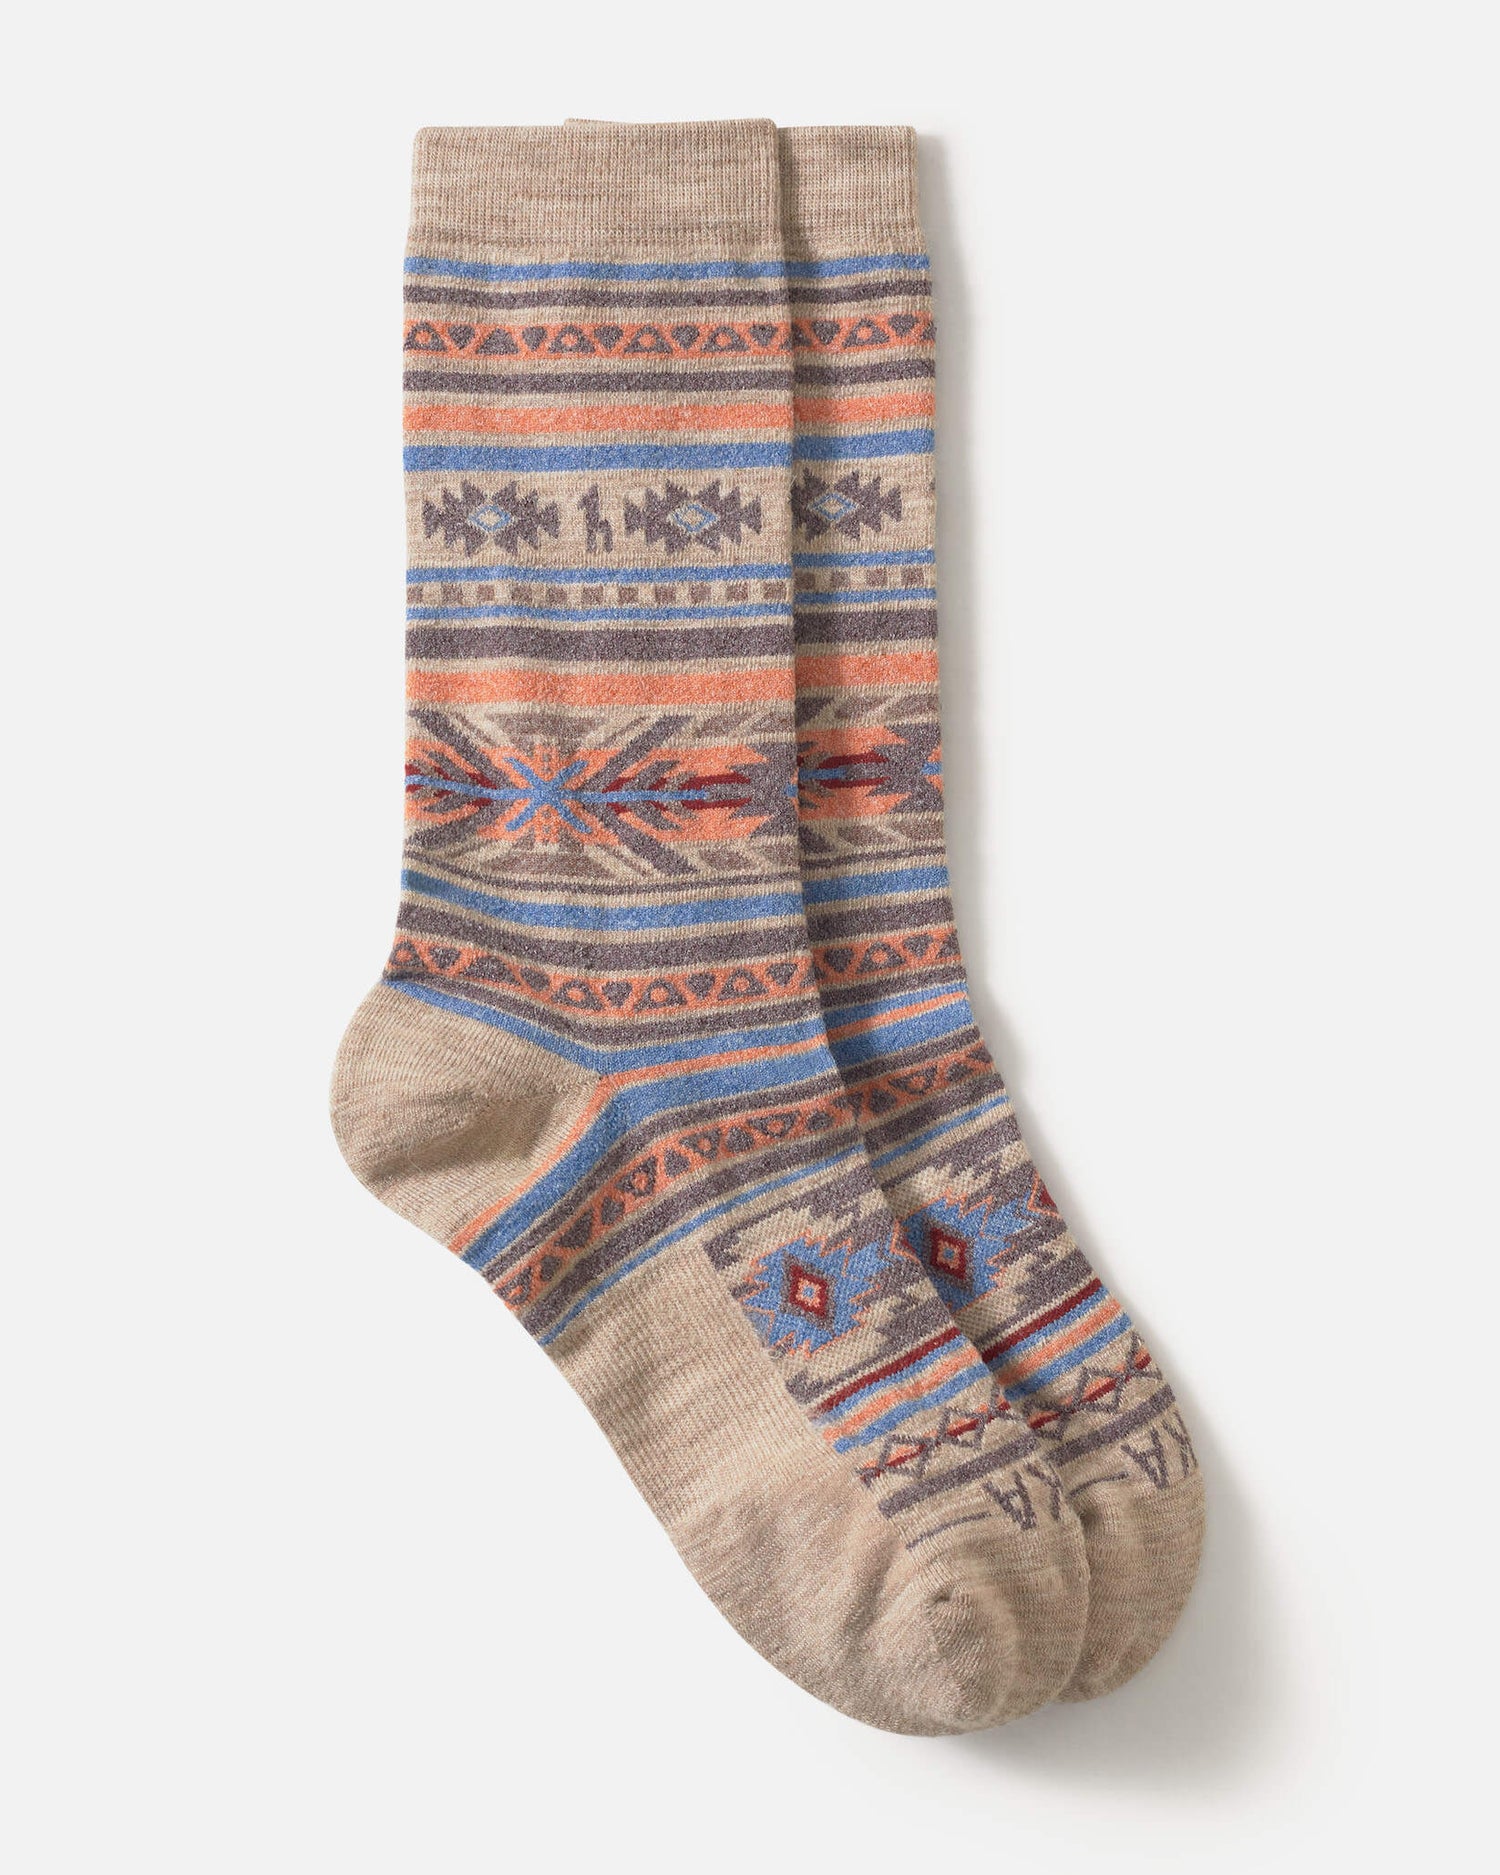 Inca socks flat lay